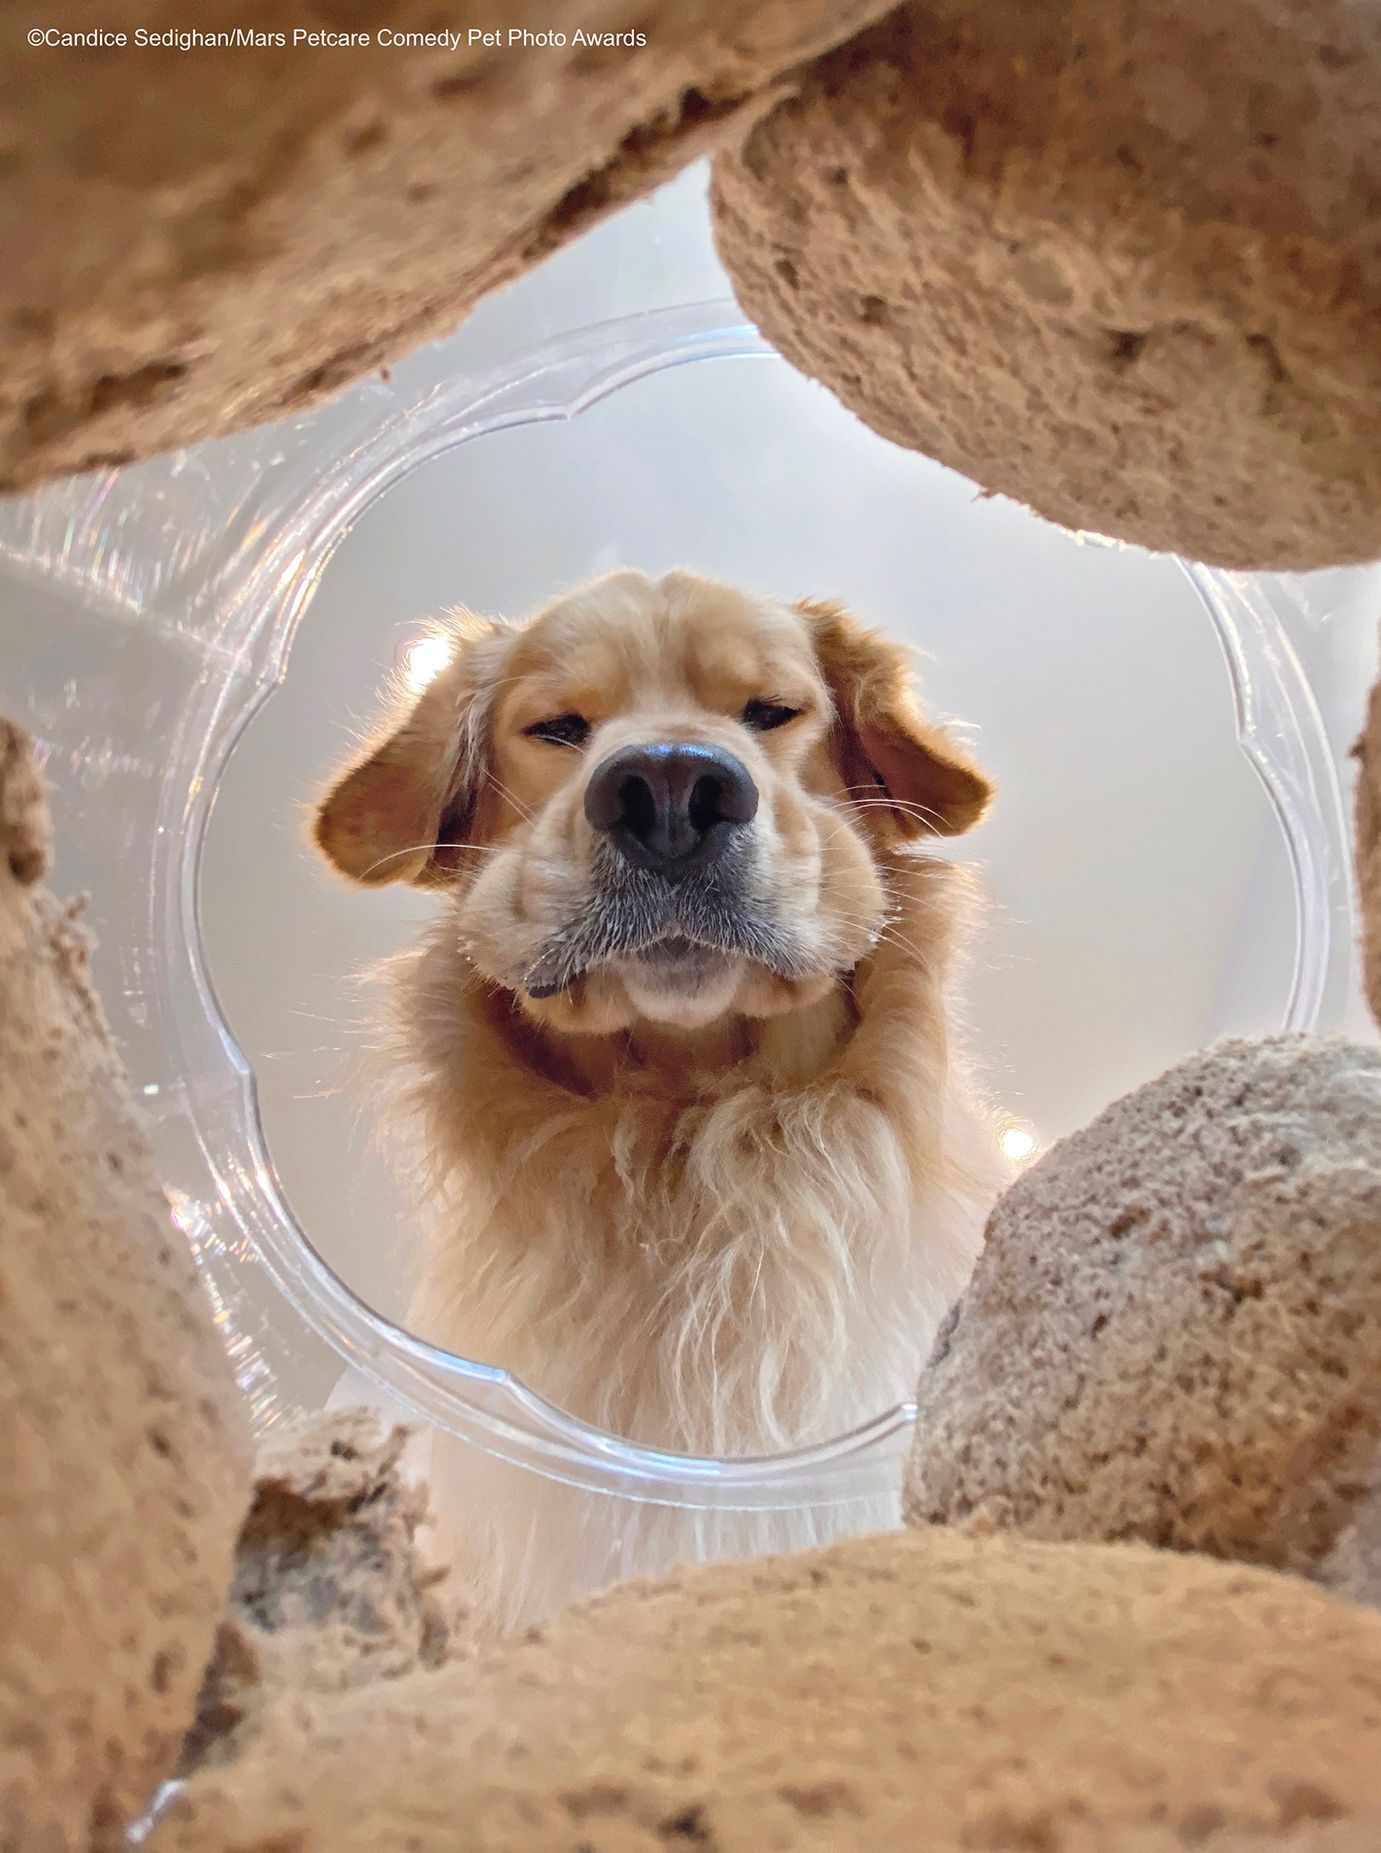 Vtipné fotky domácích mazlíčků: vítězové soutěže Mars Petcare Comedy Pet Photo Awards 2020